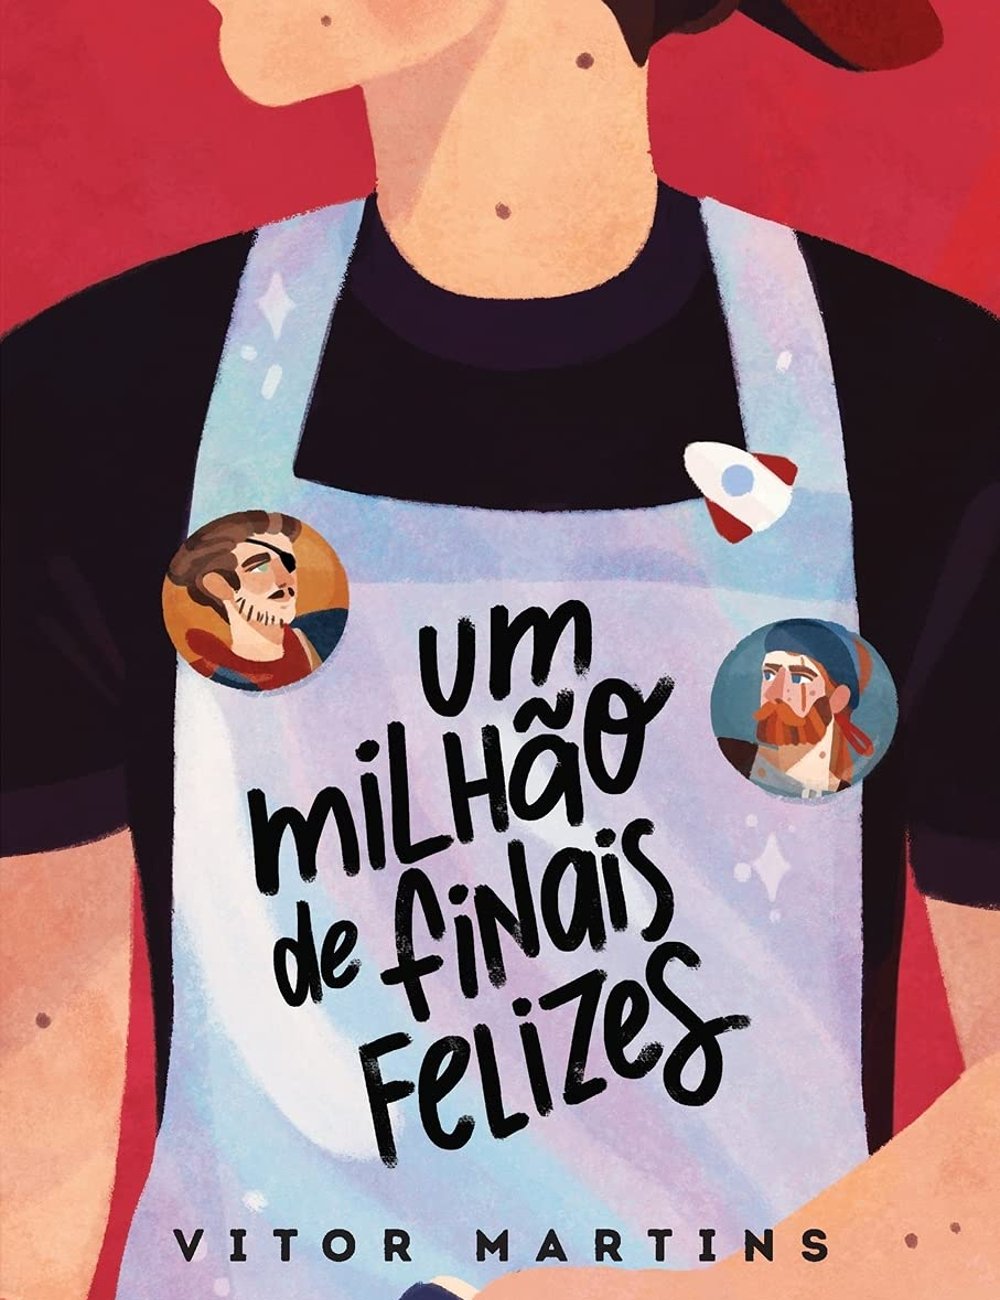 Um Milhão de Finais Felizes - Vitor Martins  - livros LGBTQIA+ - livros LGBTQIA+ - livros LGBTQIA+ - livros LGBTQIA+ - https://stealthelook.com.br